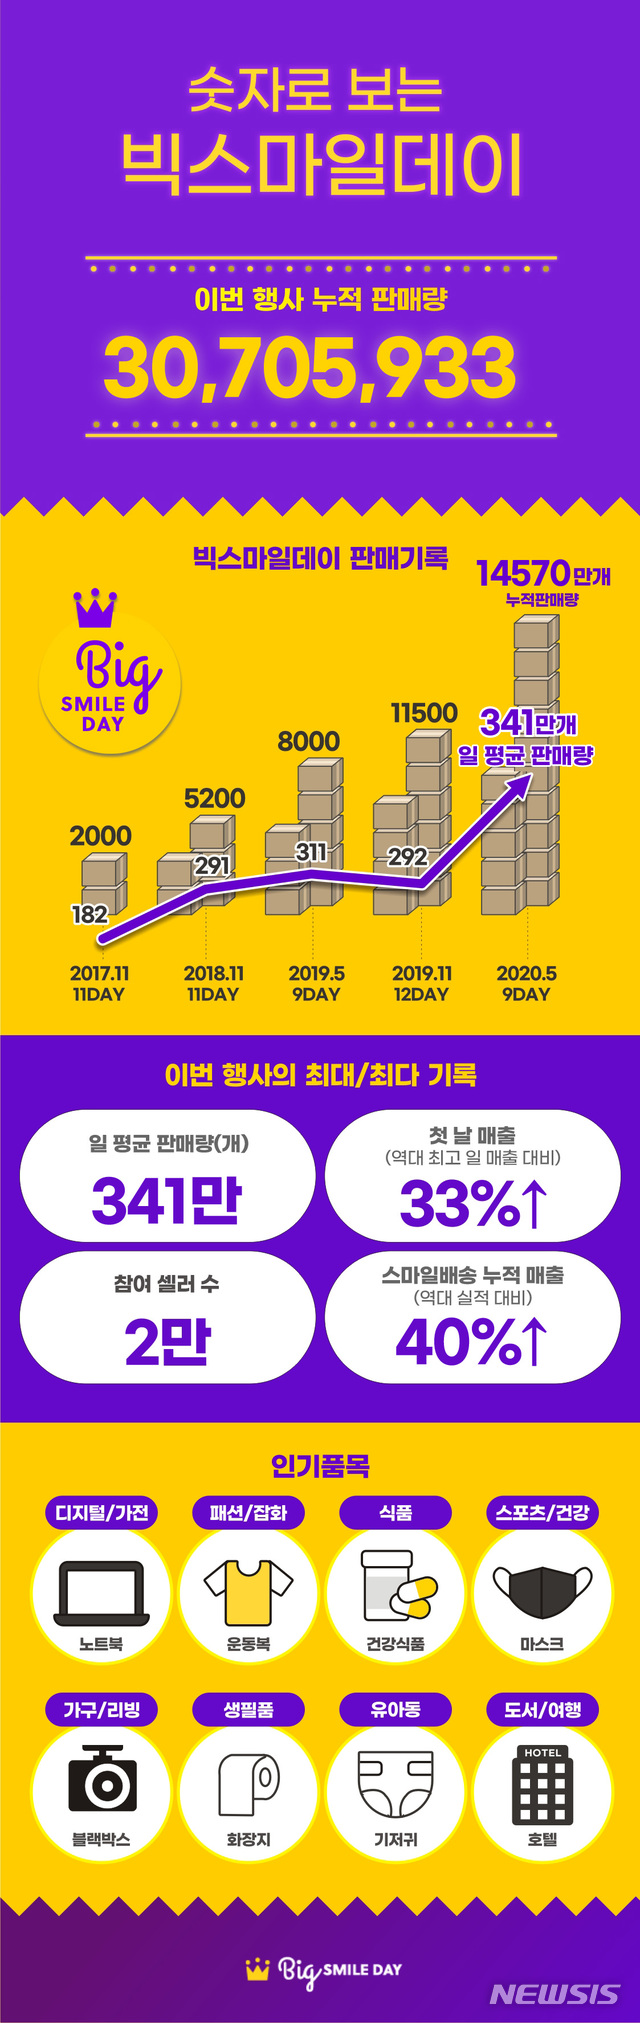 [서울=뉴시스] 이베이코리아는 지난 5월 빅스마일데이에 9일간 매일 341만개씩 판매해 누적 판매량 3070만개를 넘어섰다. (인포그래픽=이베이코리아 제공)